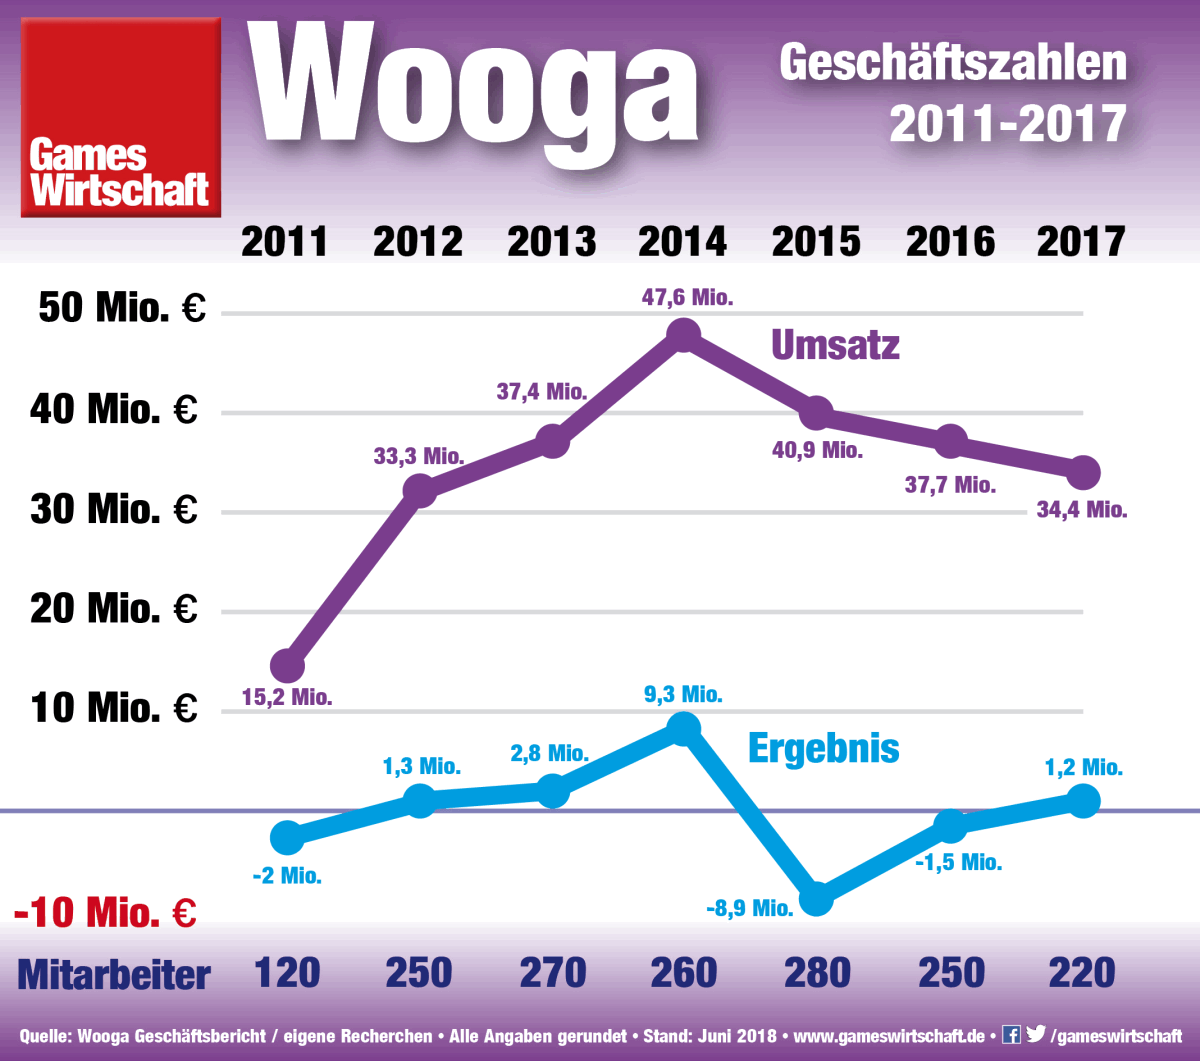 Umsatz und Ergebnis des Berliner Spiele-Entwicklers Wooga (Stand: Juni 2018)